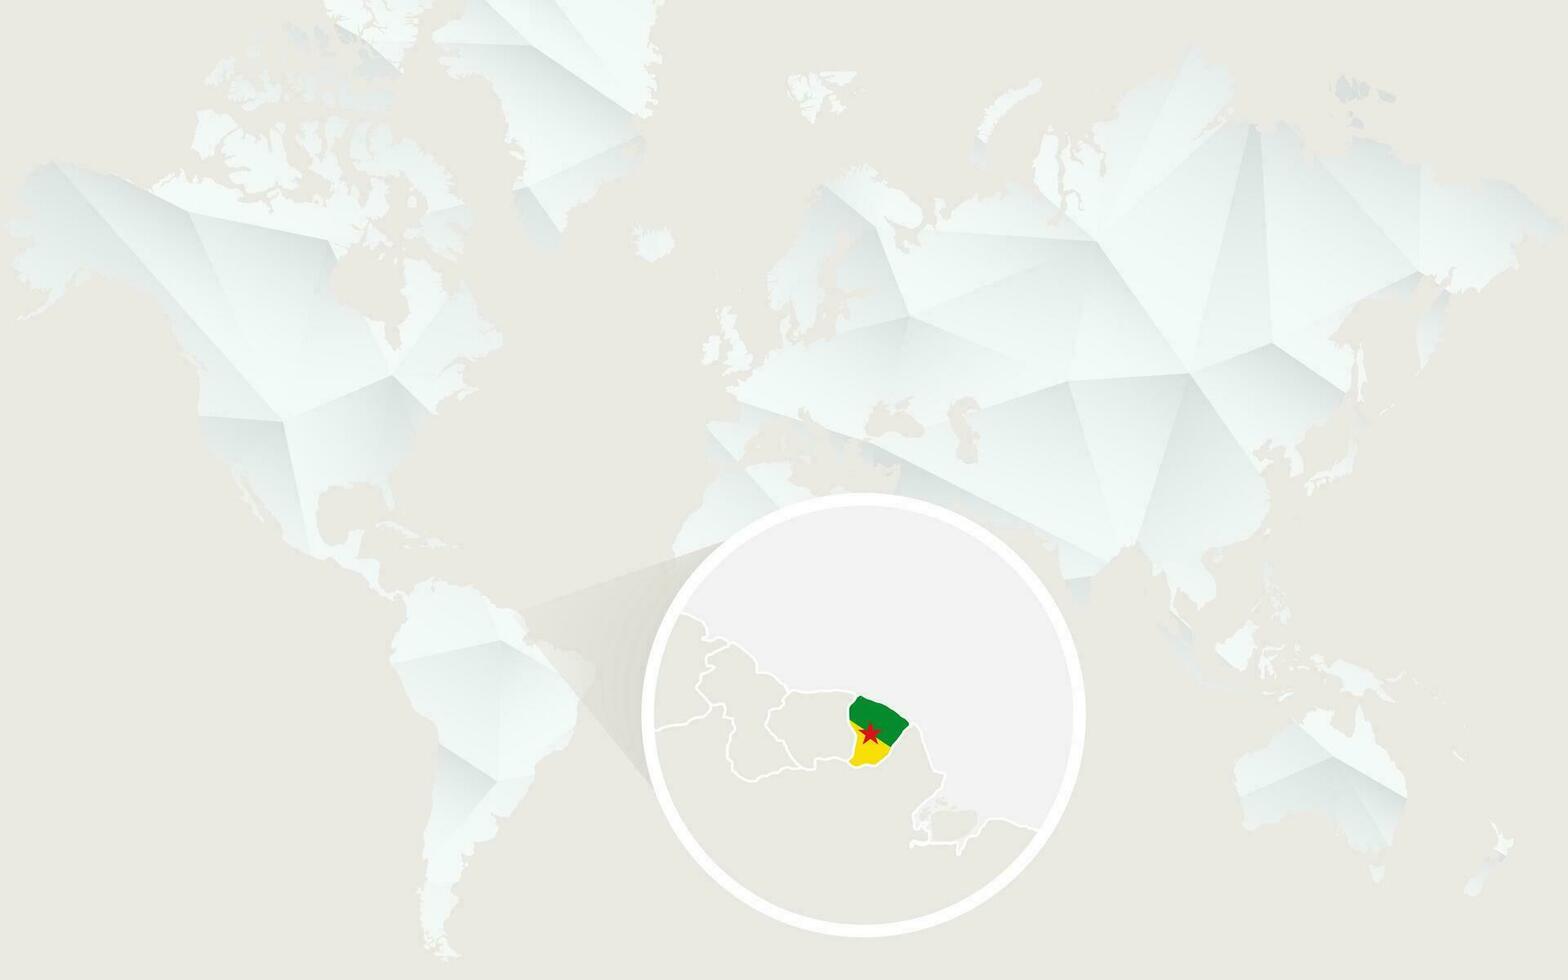 Frans Guyana kaart met vlag in contour Aan wit veelhoekige wereld kaart. vector